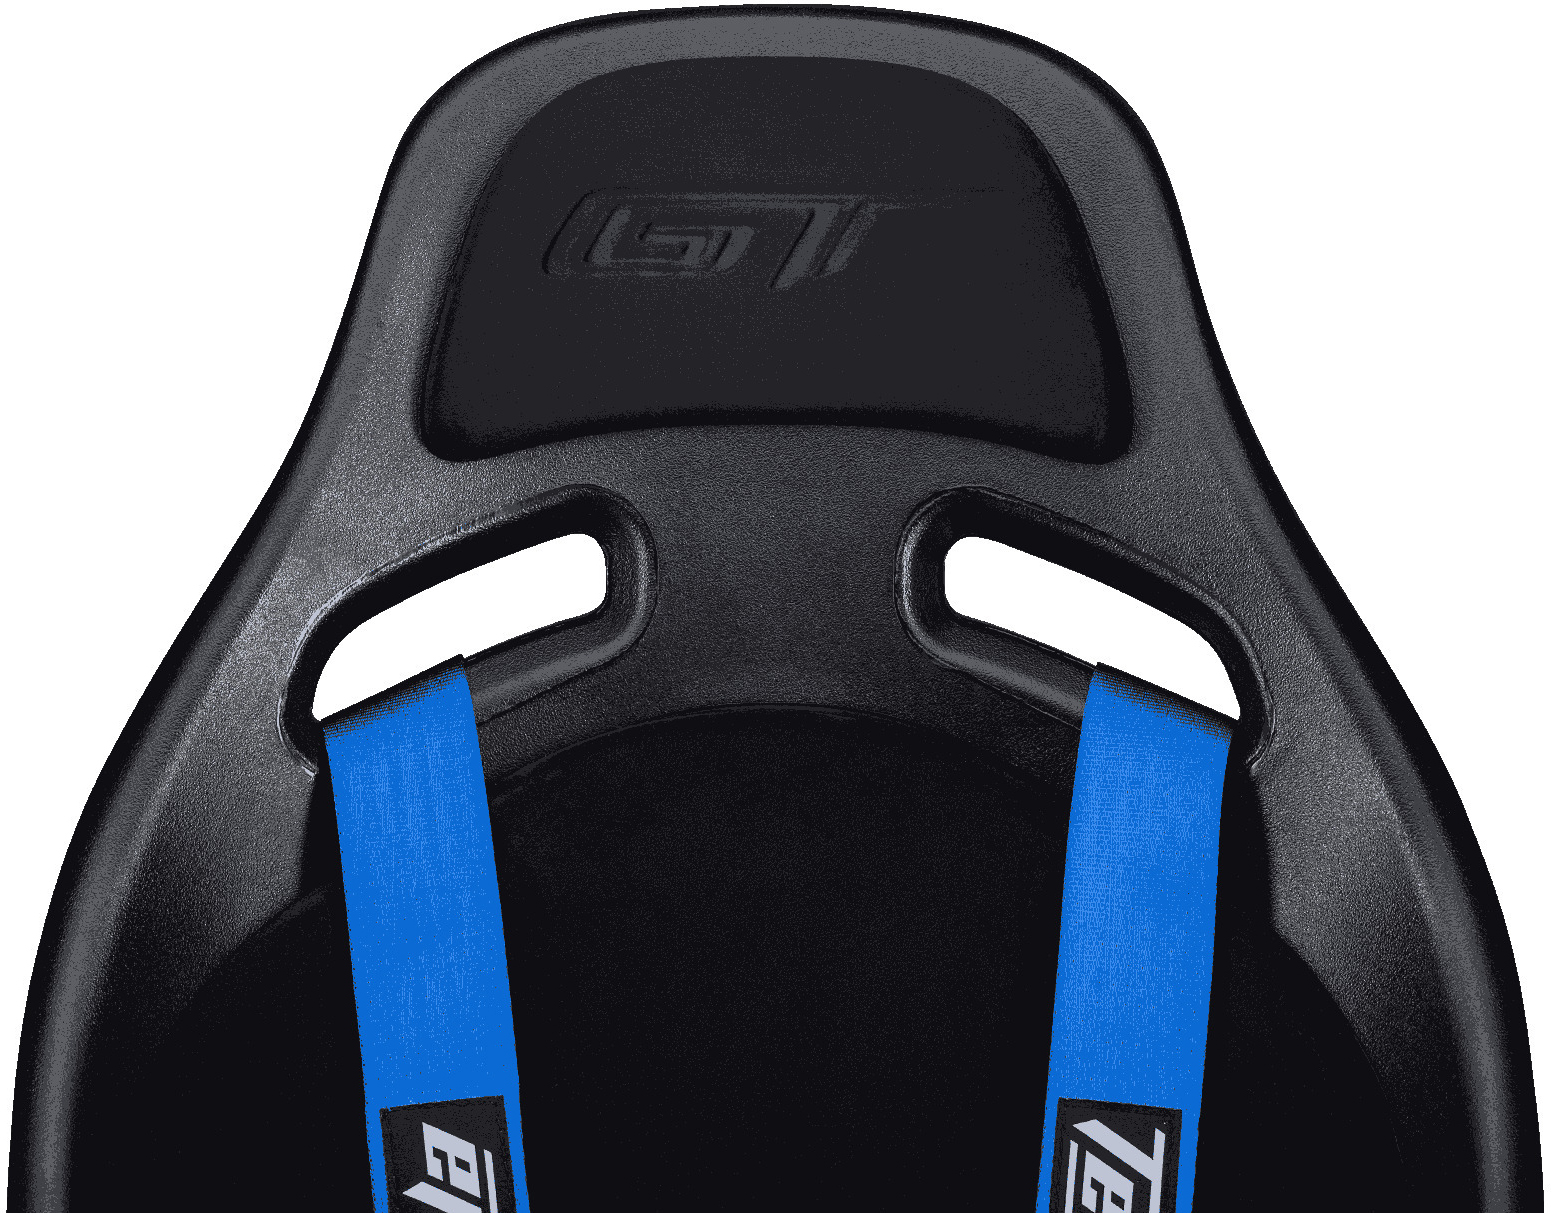 Next Level Racing - Assento de Competição Next Level Racing ELITE ES1 RACING SIMULATOR SEAT FORD GT EDITION